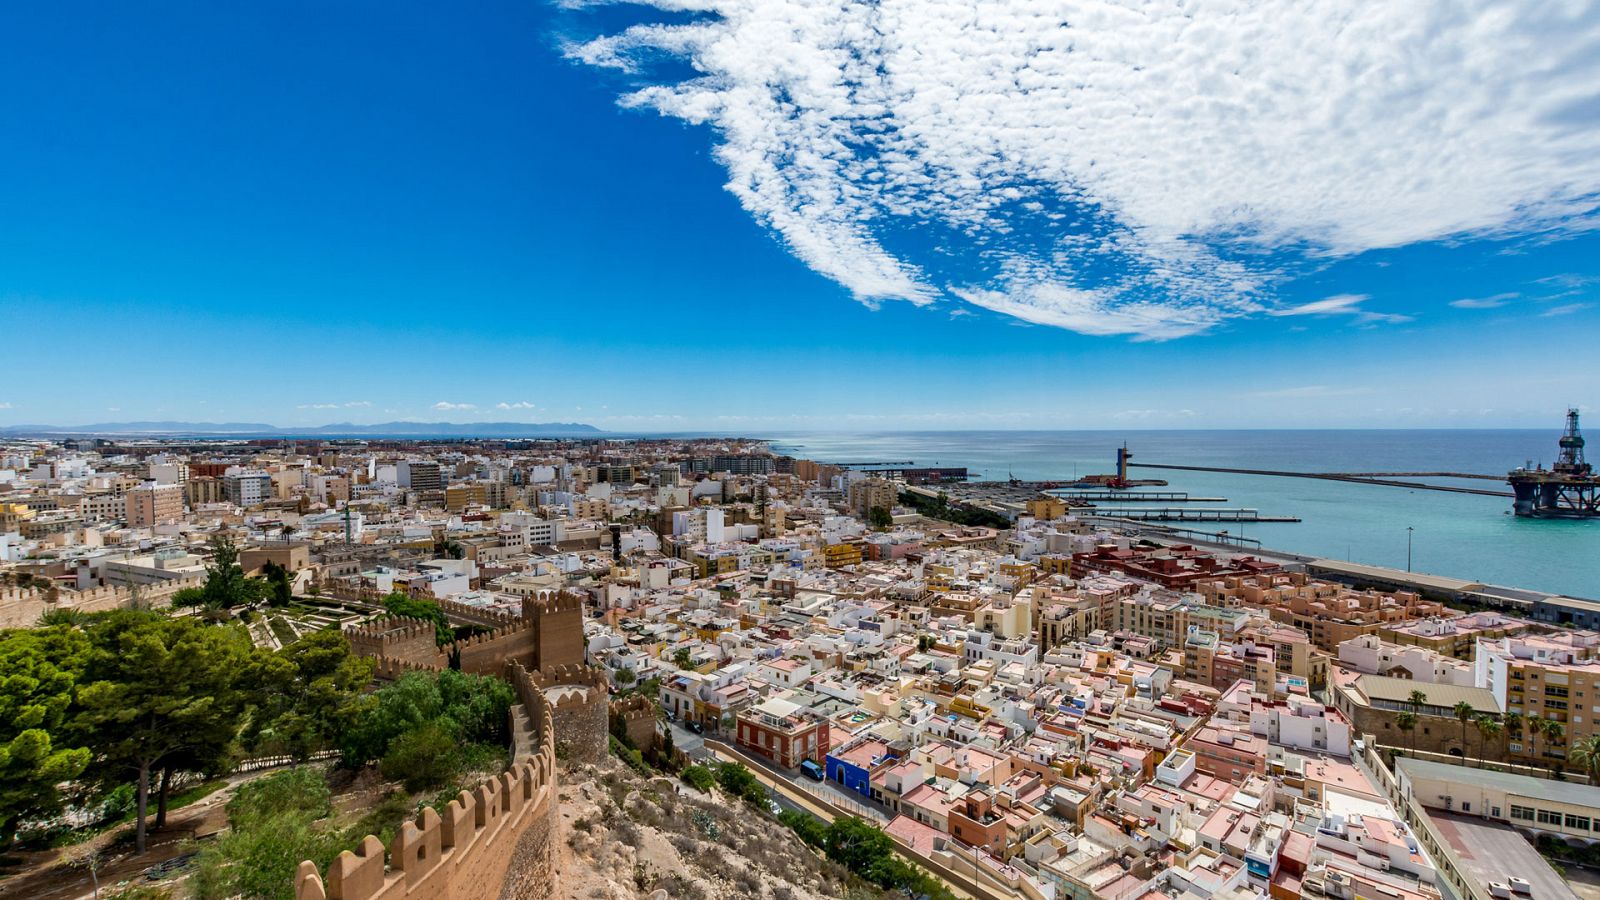 Un país mágico - Almería - ver ahora